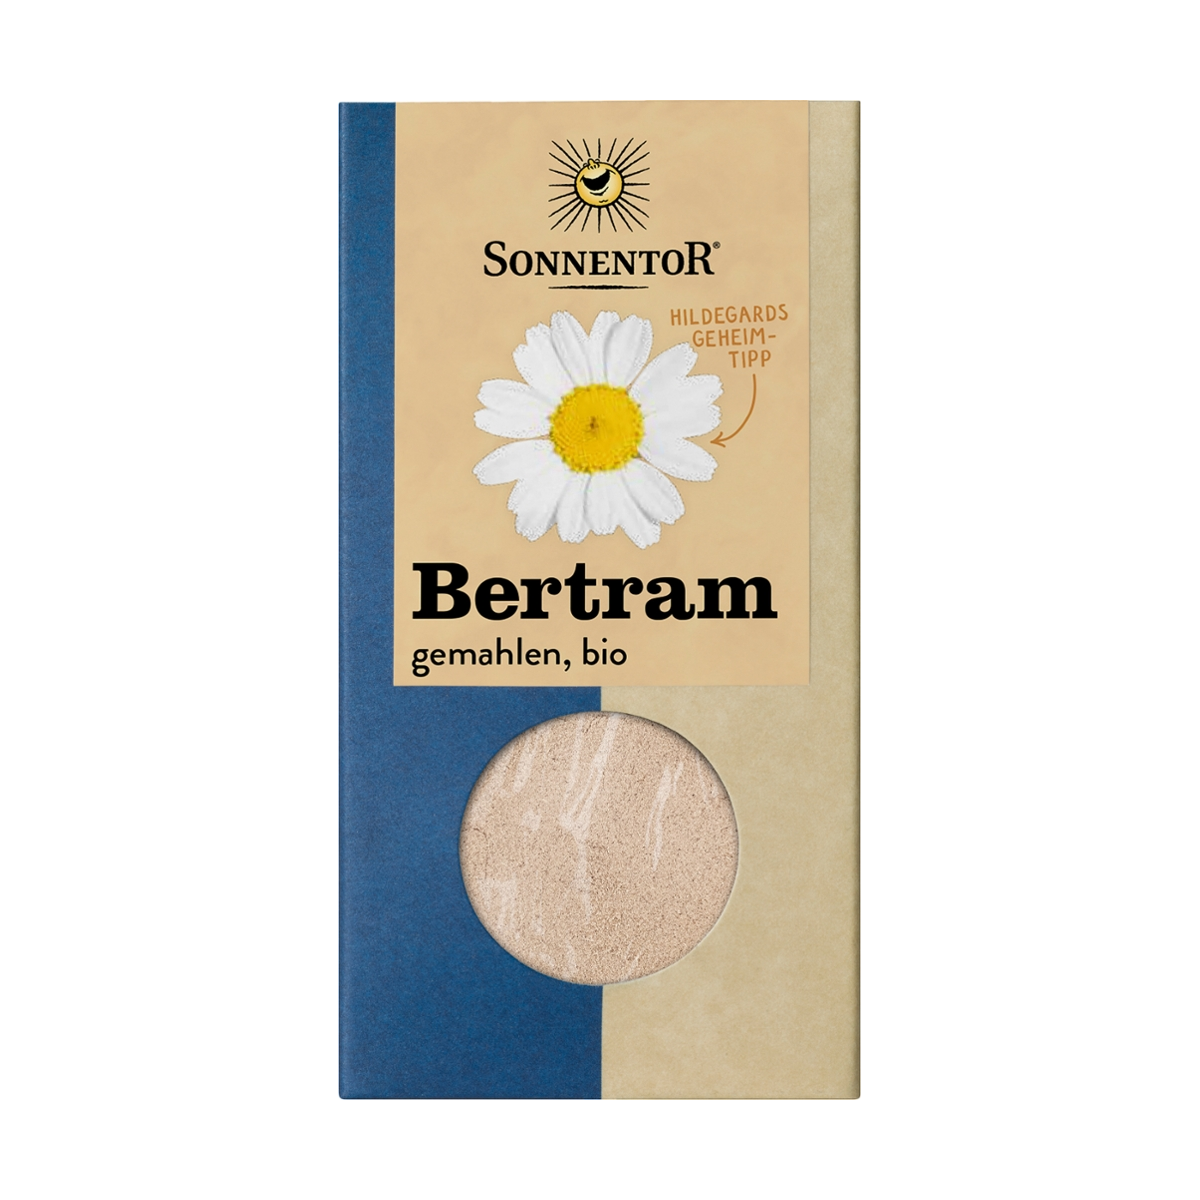 Sonnentor - Bertram gemahlen Hildegard